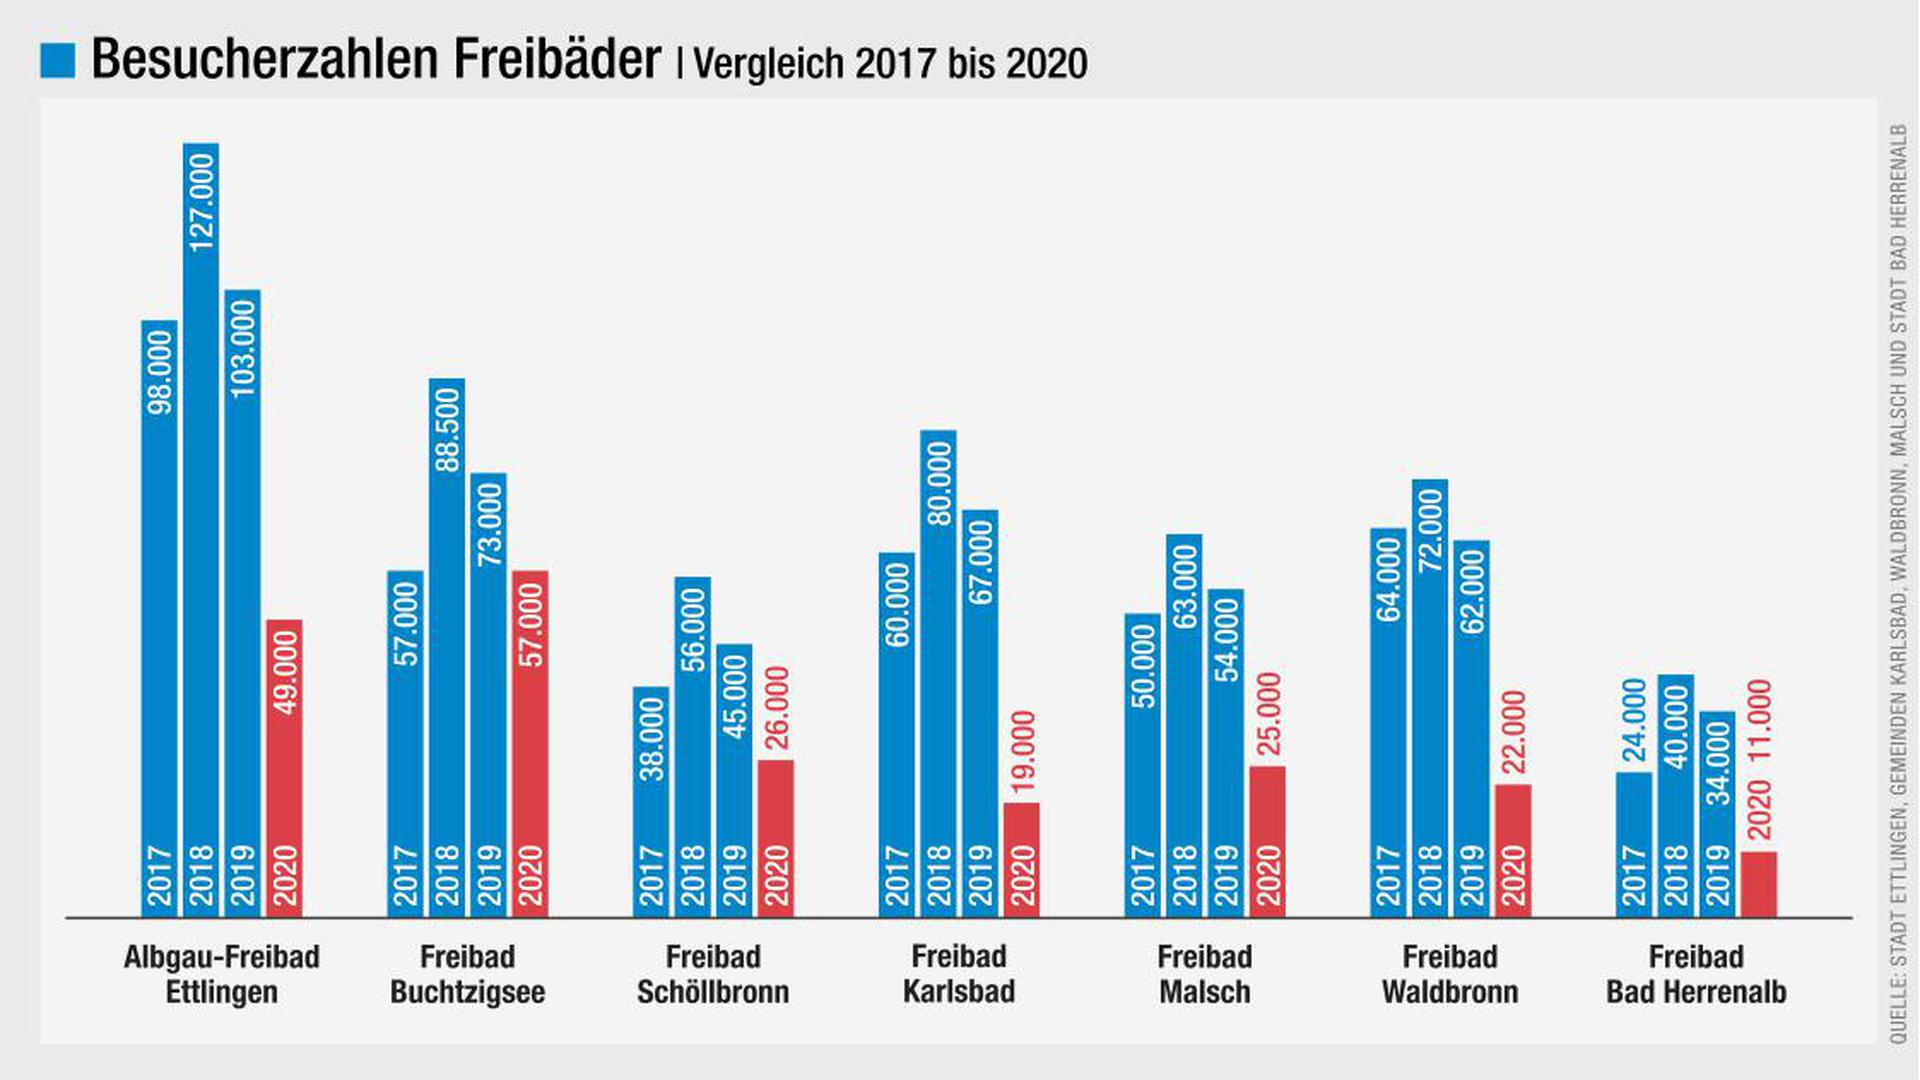 Besucherzahlen der Freibäder (Vergleich 2017 bis 2020)